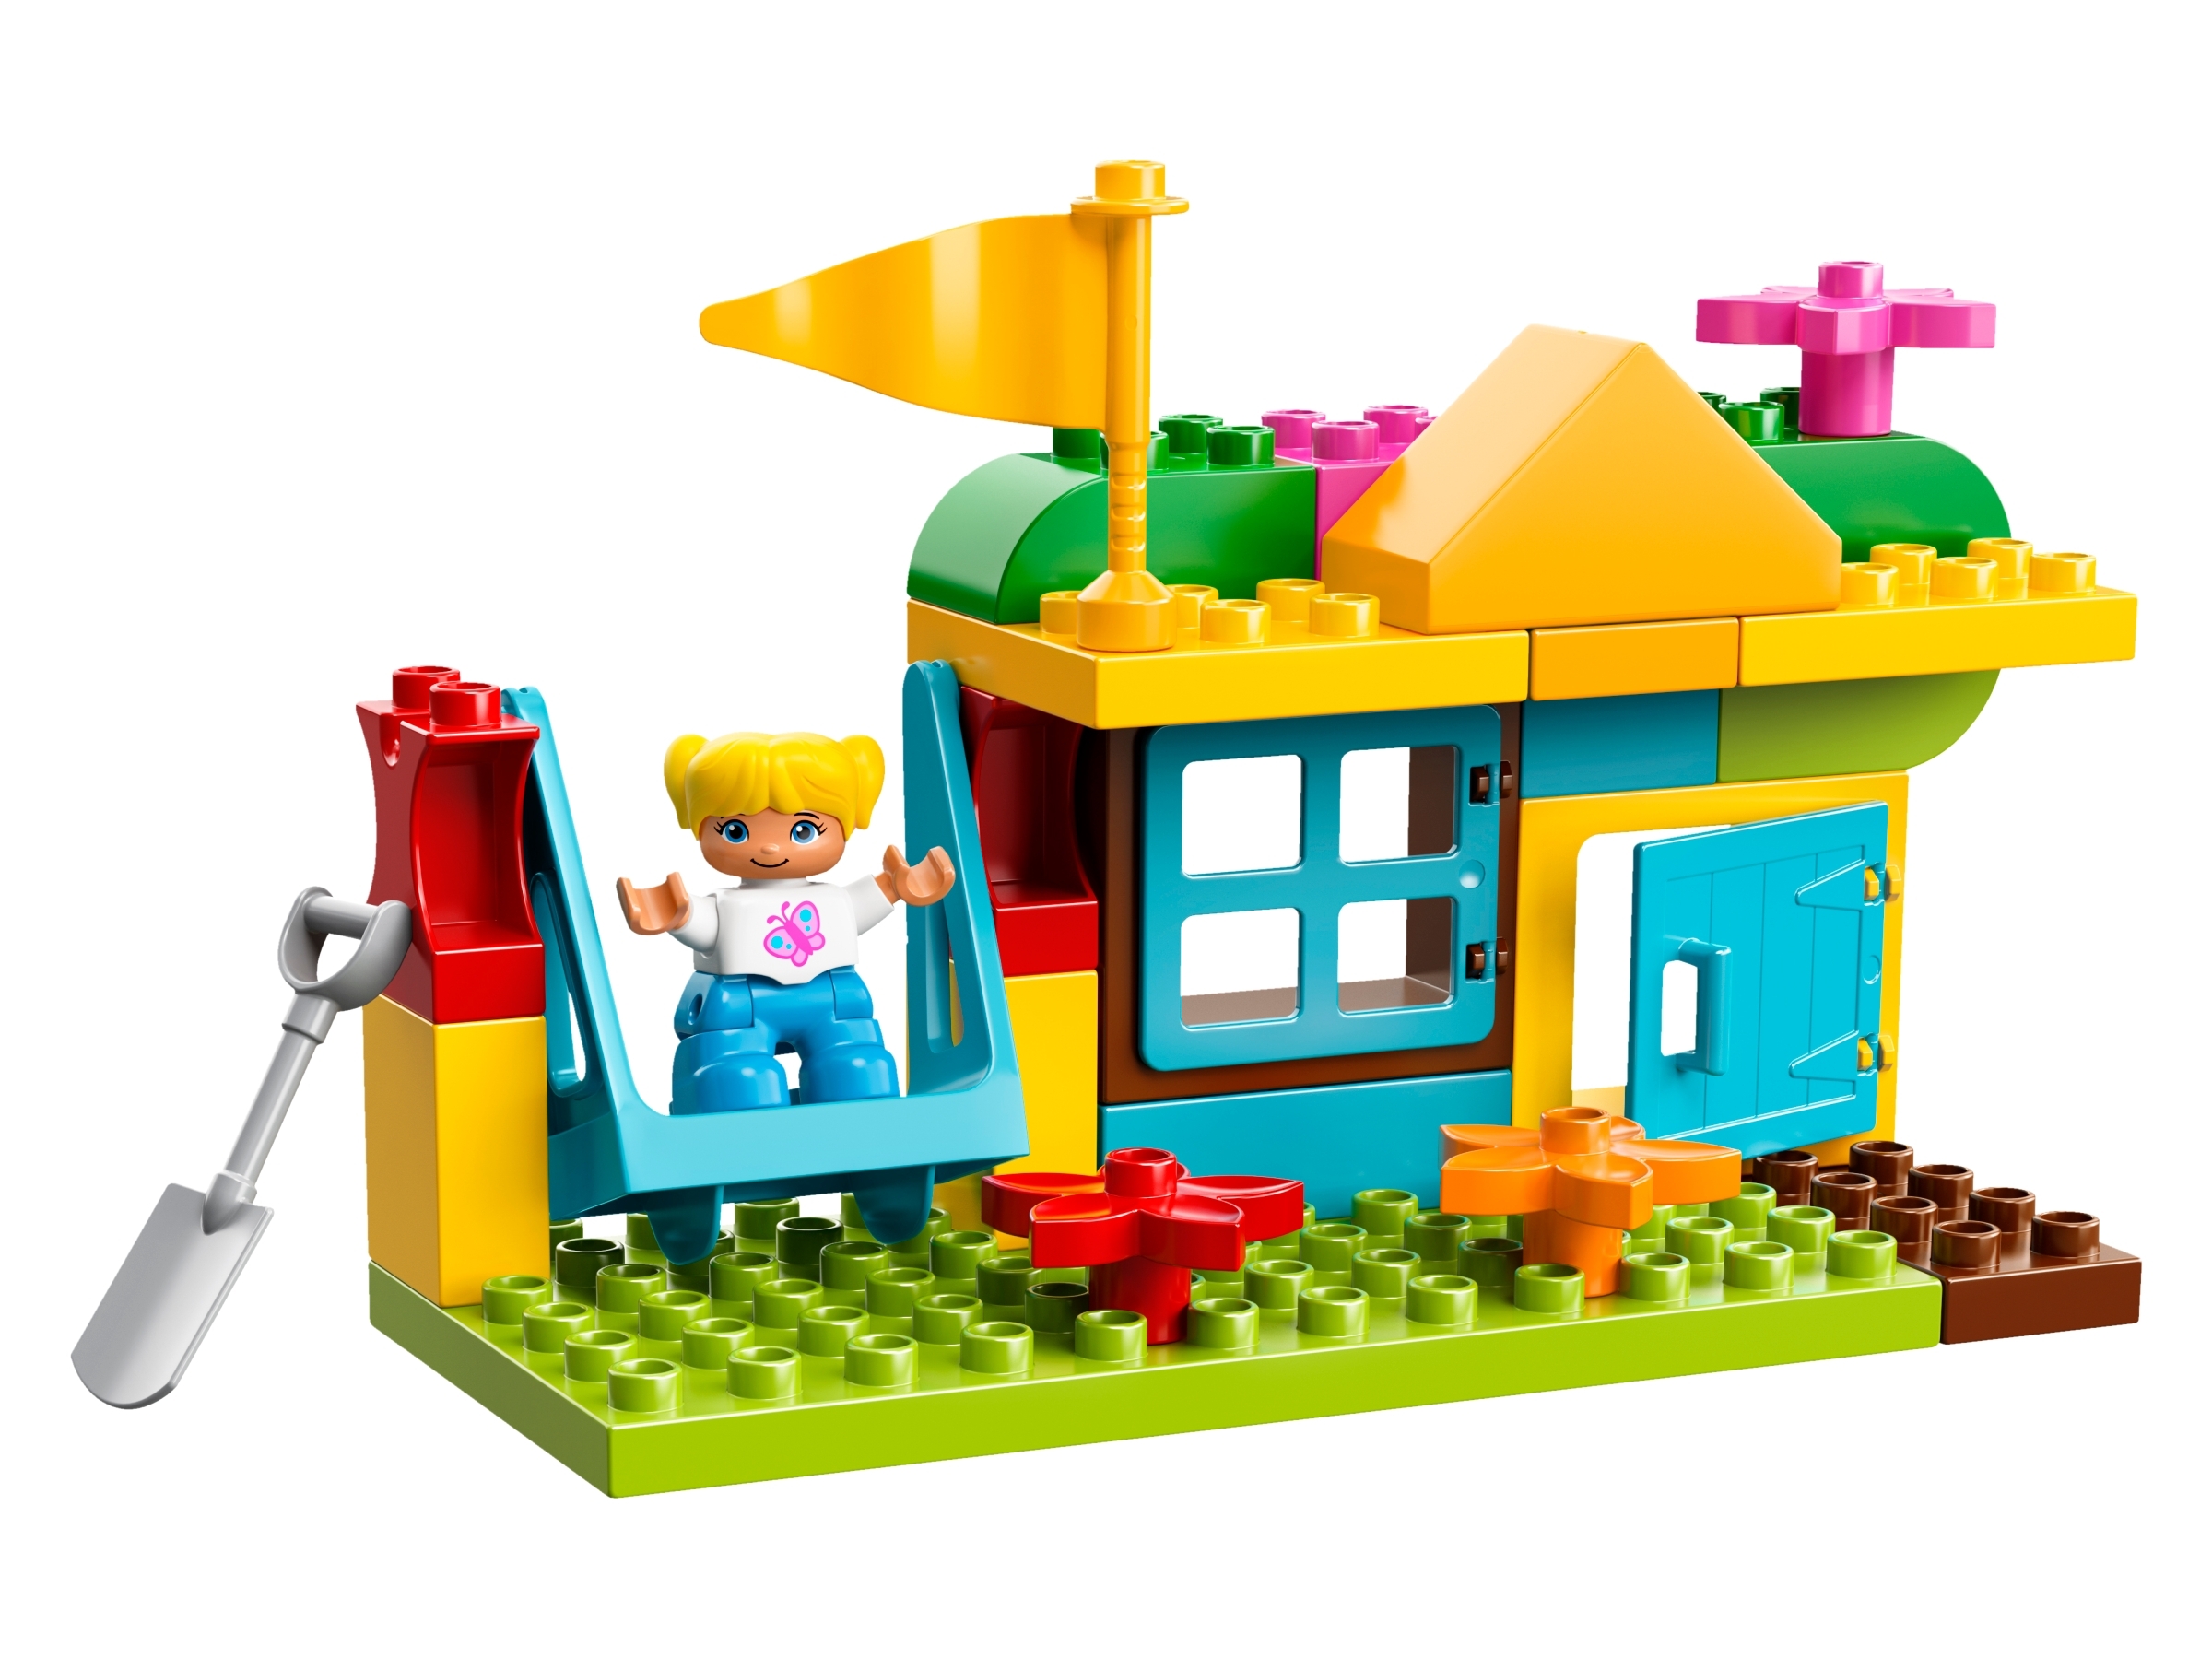 LEGO Duplo Large Playground Brick Box Building Play Set 10864 NEW NIB Sealed 